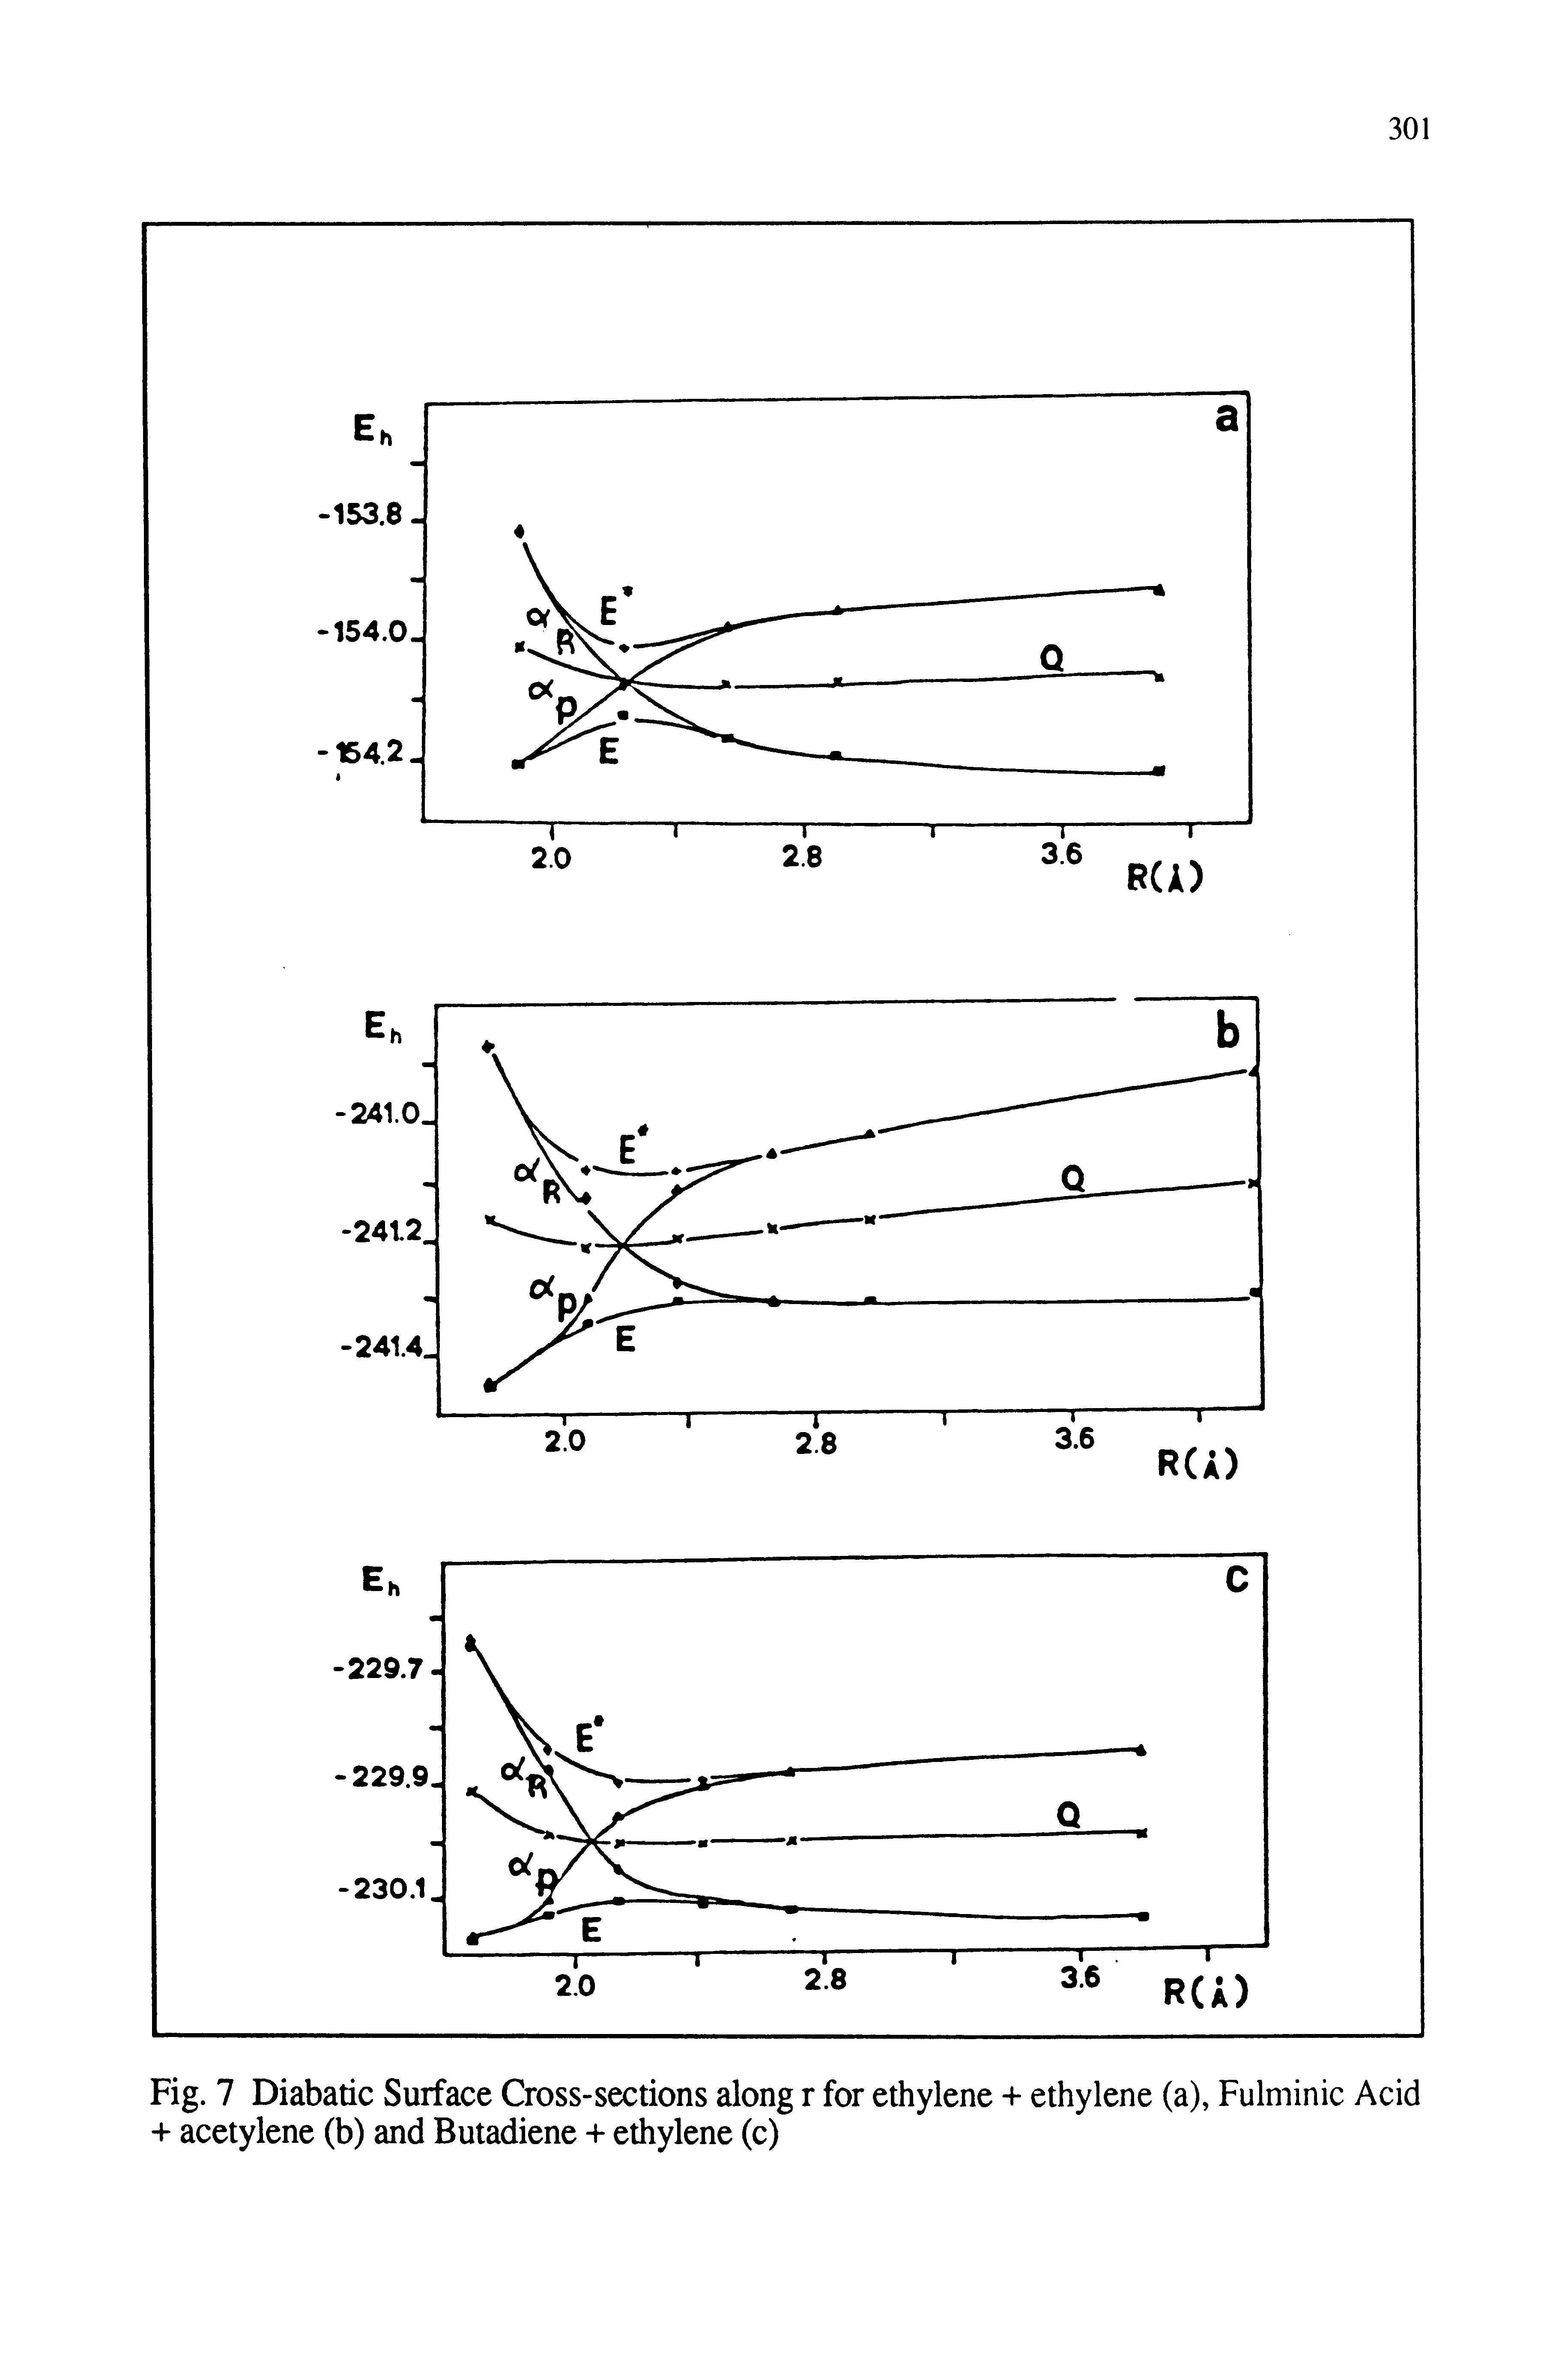 Fig. 7 Diabatic Surface Cross-sections along r for ethylene -i- ethylene (a), Fulminic Acid + acetylene (b) and Butadiene ethylene (c)...